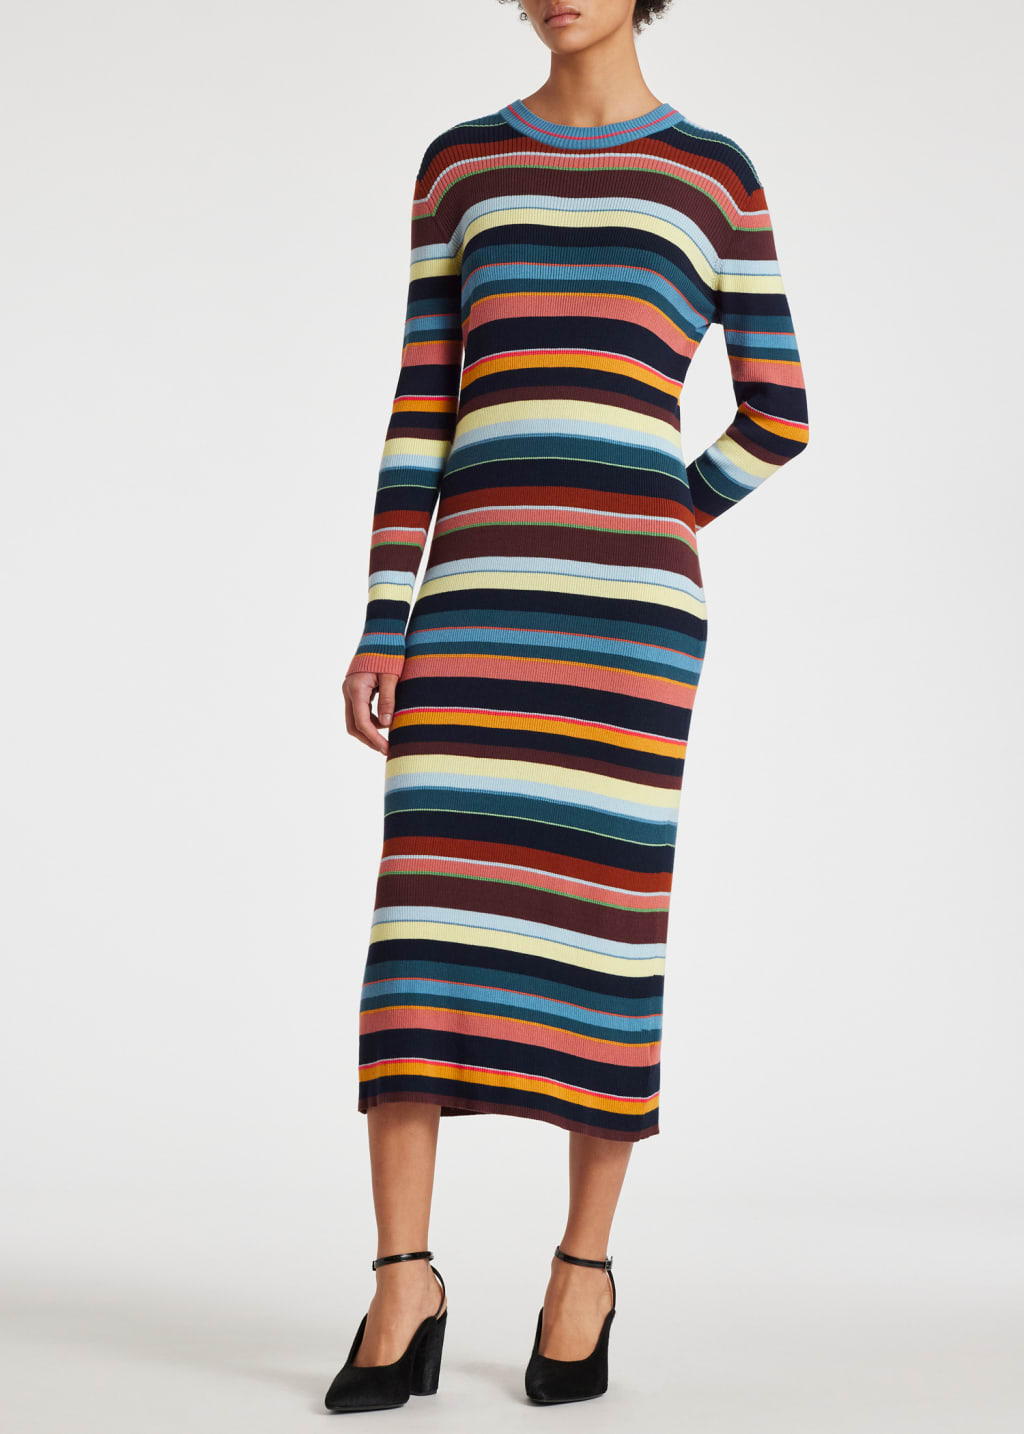 Model View - Women's Multi Stripe Knitted Dress Paul Smith